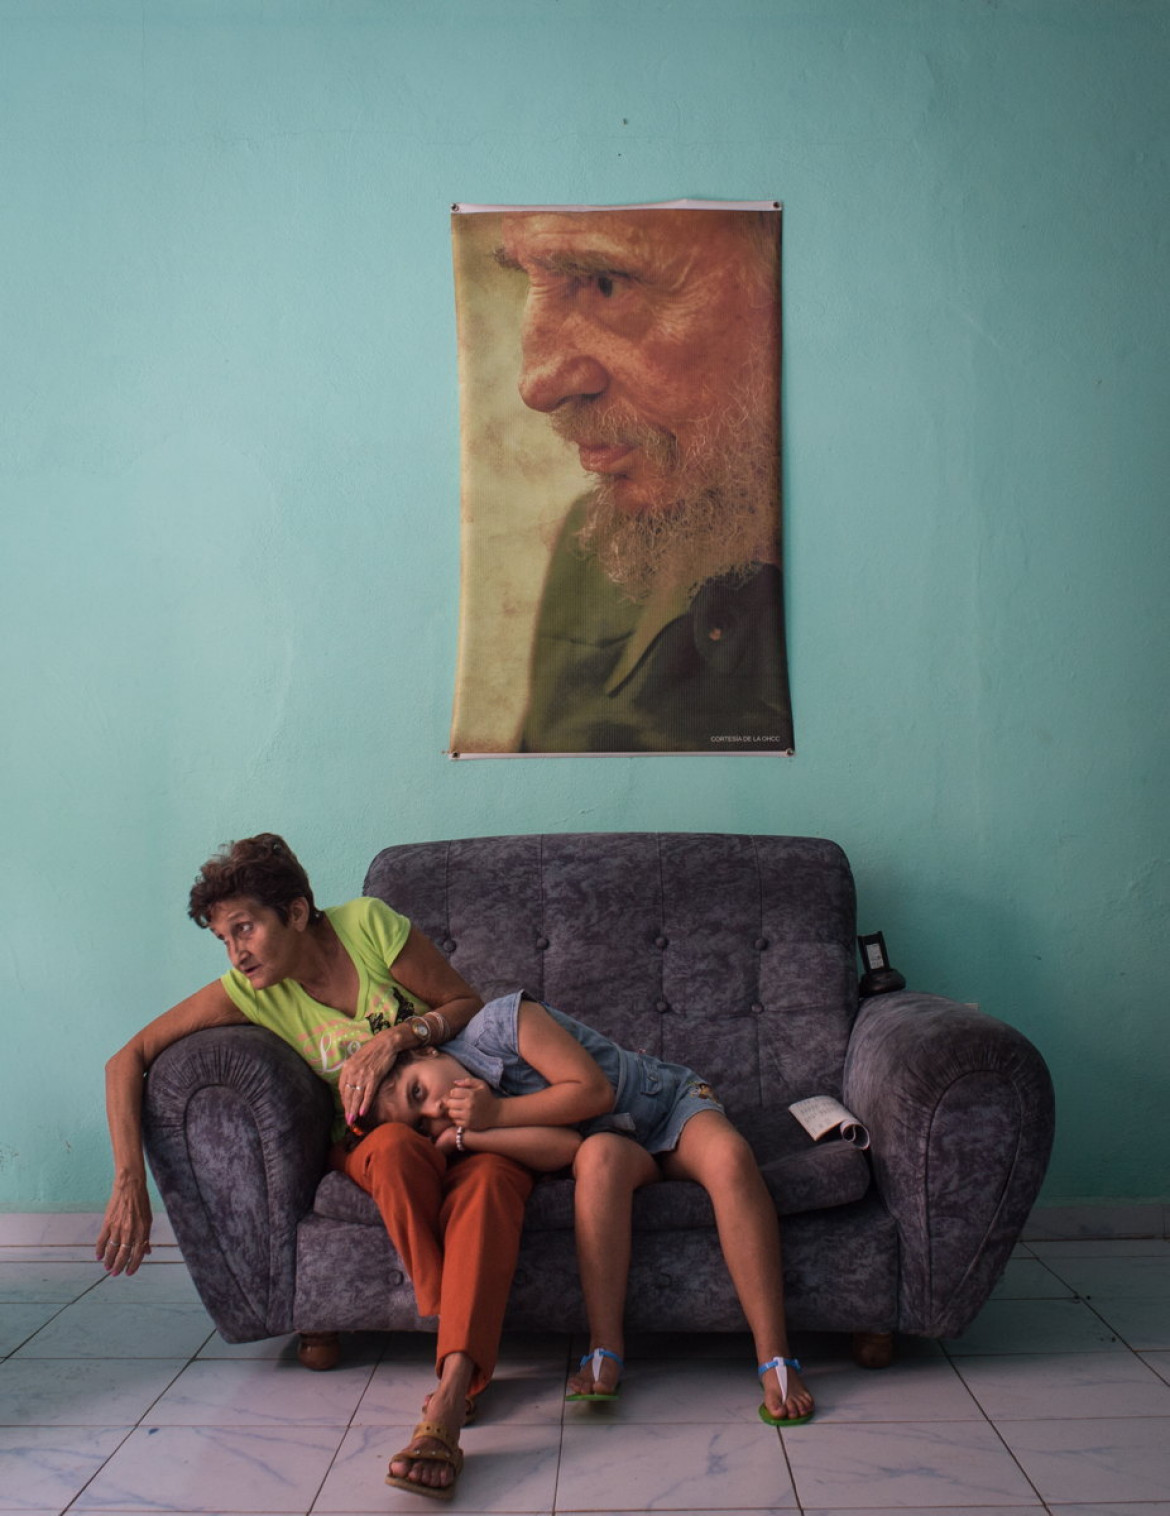 fot. Kristina Kormilitsyna, "Fidelity",  3. miejsce  kategorii People / Singles.

Dwie kobiety odpoczywają pod portretem byłego dyktatora Fidela Castro na posterunku policji w Camaguey na Kubie, 12 lutego 2016 roku.